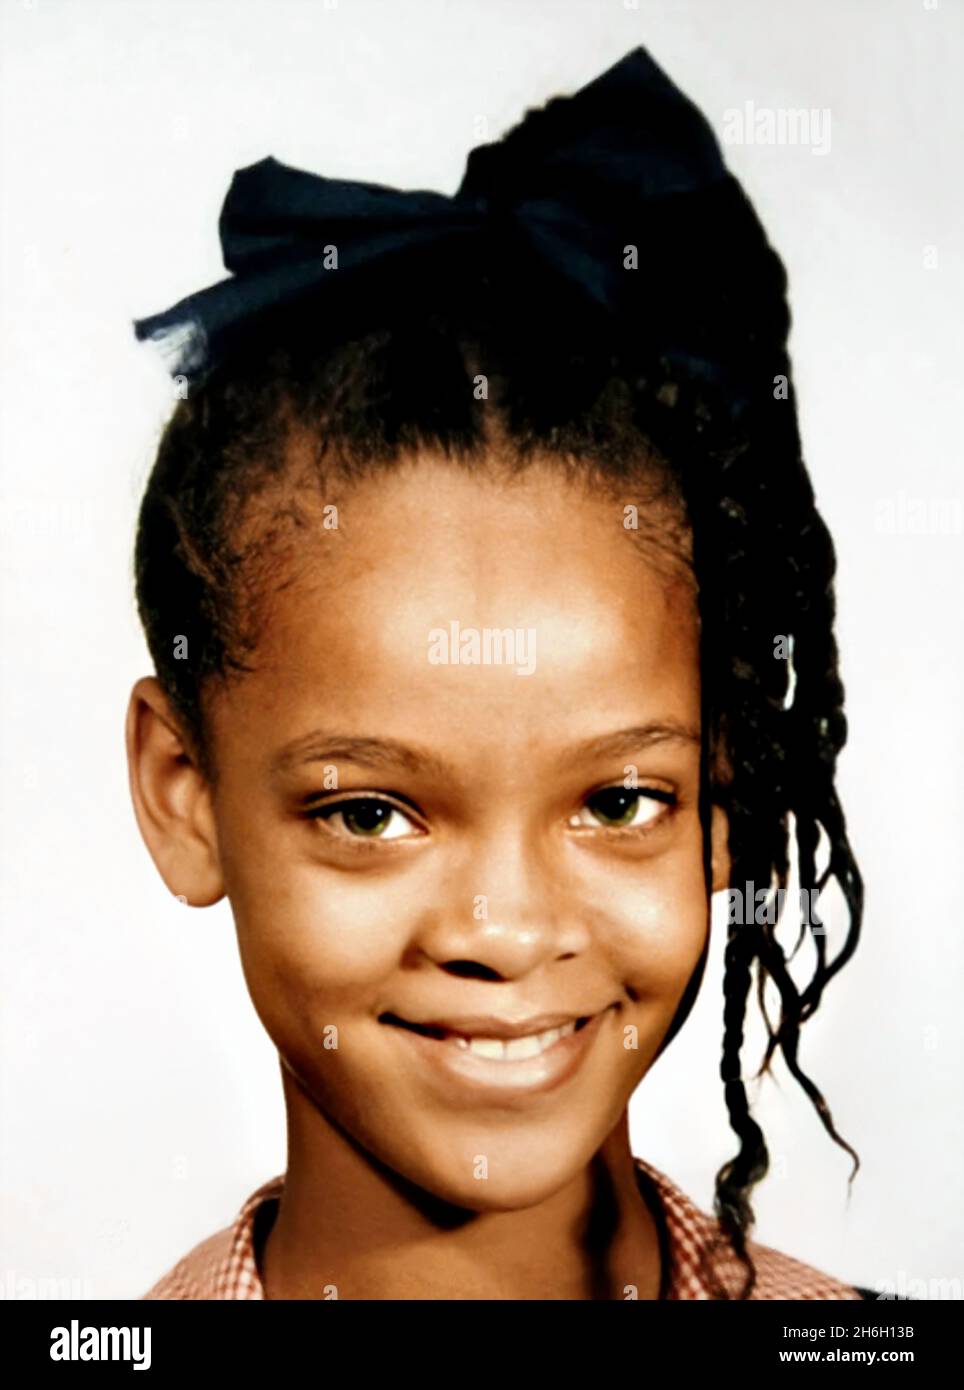 1999 , USA : The celebrated american singer RIHANNA ( Robyn Rihanna Fenty , born 20 february 1988 ), when was a young girl aged 11 . Unknown photographer. - HISTORY - FOTO STORICHE - personalità da giovane giovani - ragazza - personality personalities when was young girl - INFANZIA - CHILDHOOD - POP MUSIC - MUSICA - cantante - bambino - BAMBINI - BAMBINA - CHILD - CHILDREN - BAMBINO - CHILDHOOD - INFANZIA - smile - sorriso --- ARCHIVIO GBB Stock Photo